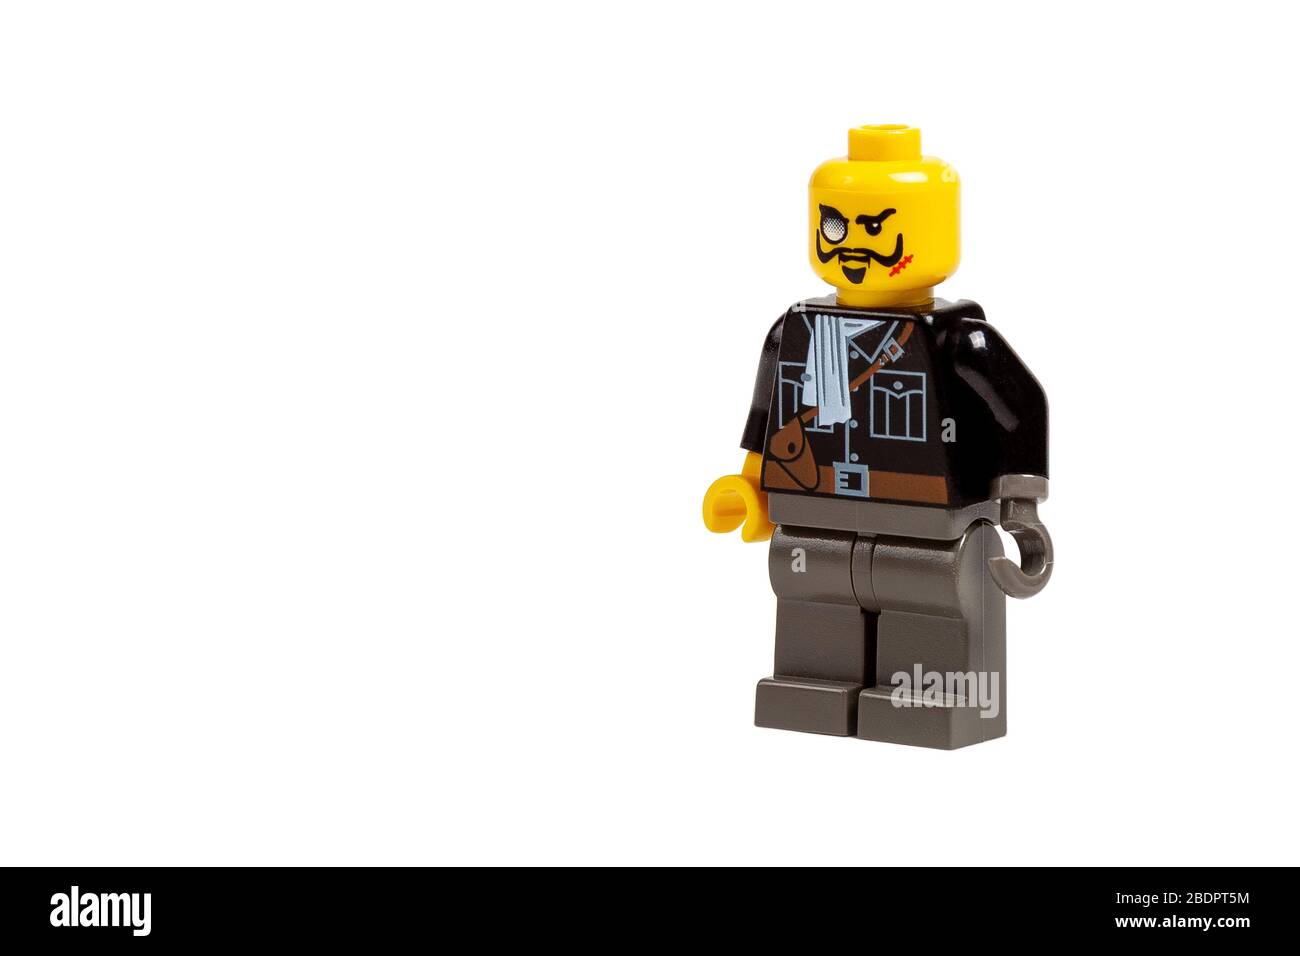 Mini-figurine noire Lego villain simple avec crochet pour une main, un monocle, une moustache et une cicatrice. Jouet mauvais gars concept abstrait objet isolé Banque D'Images